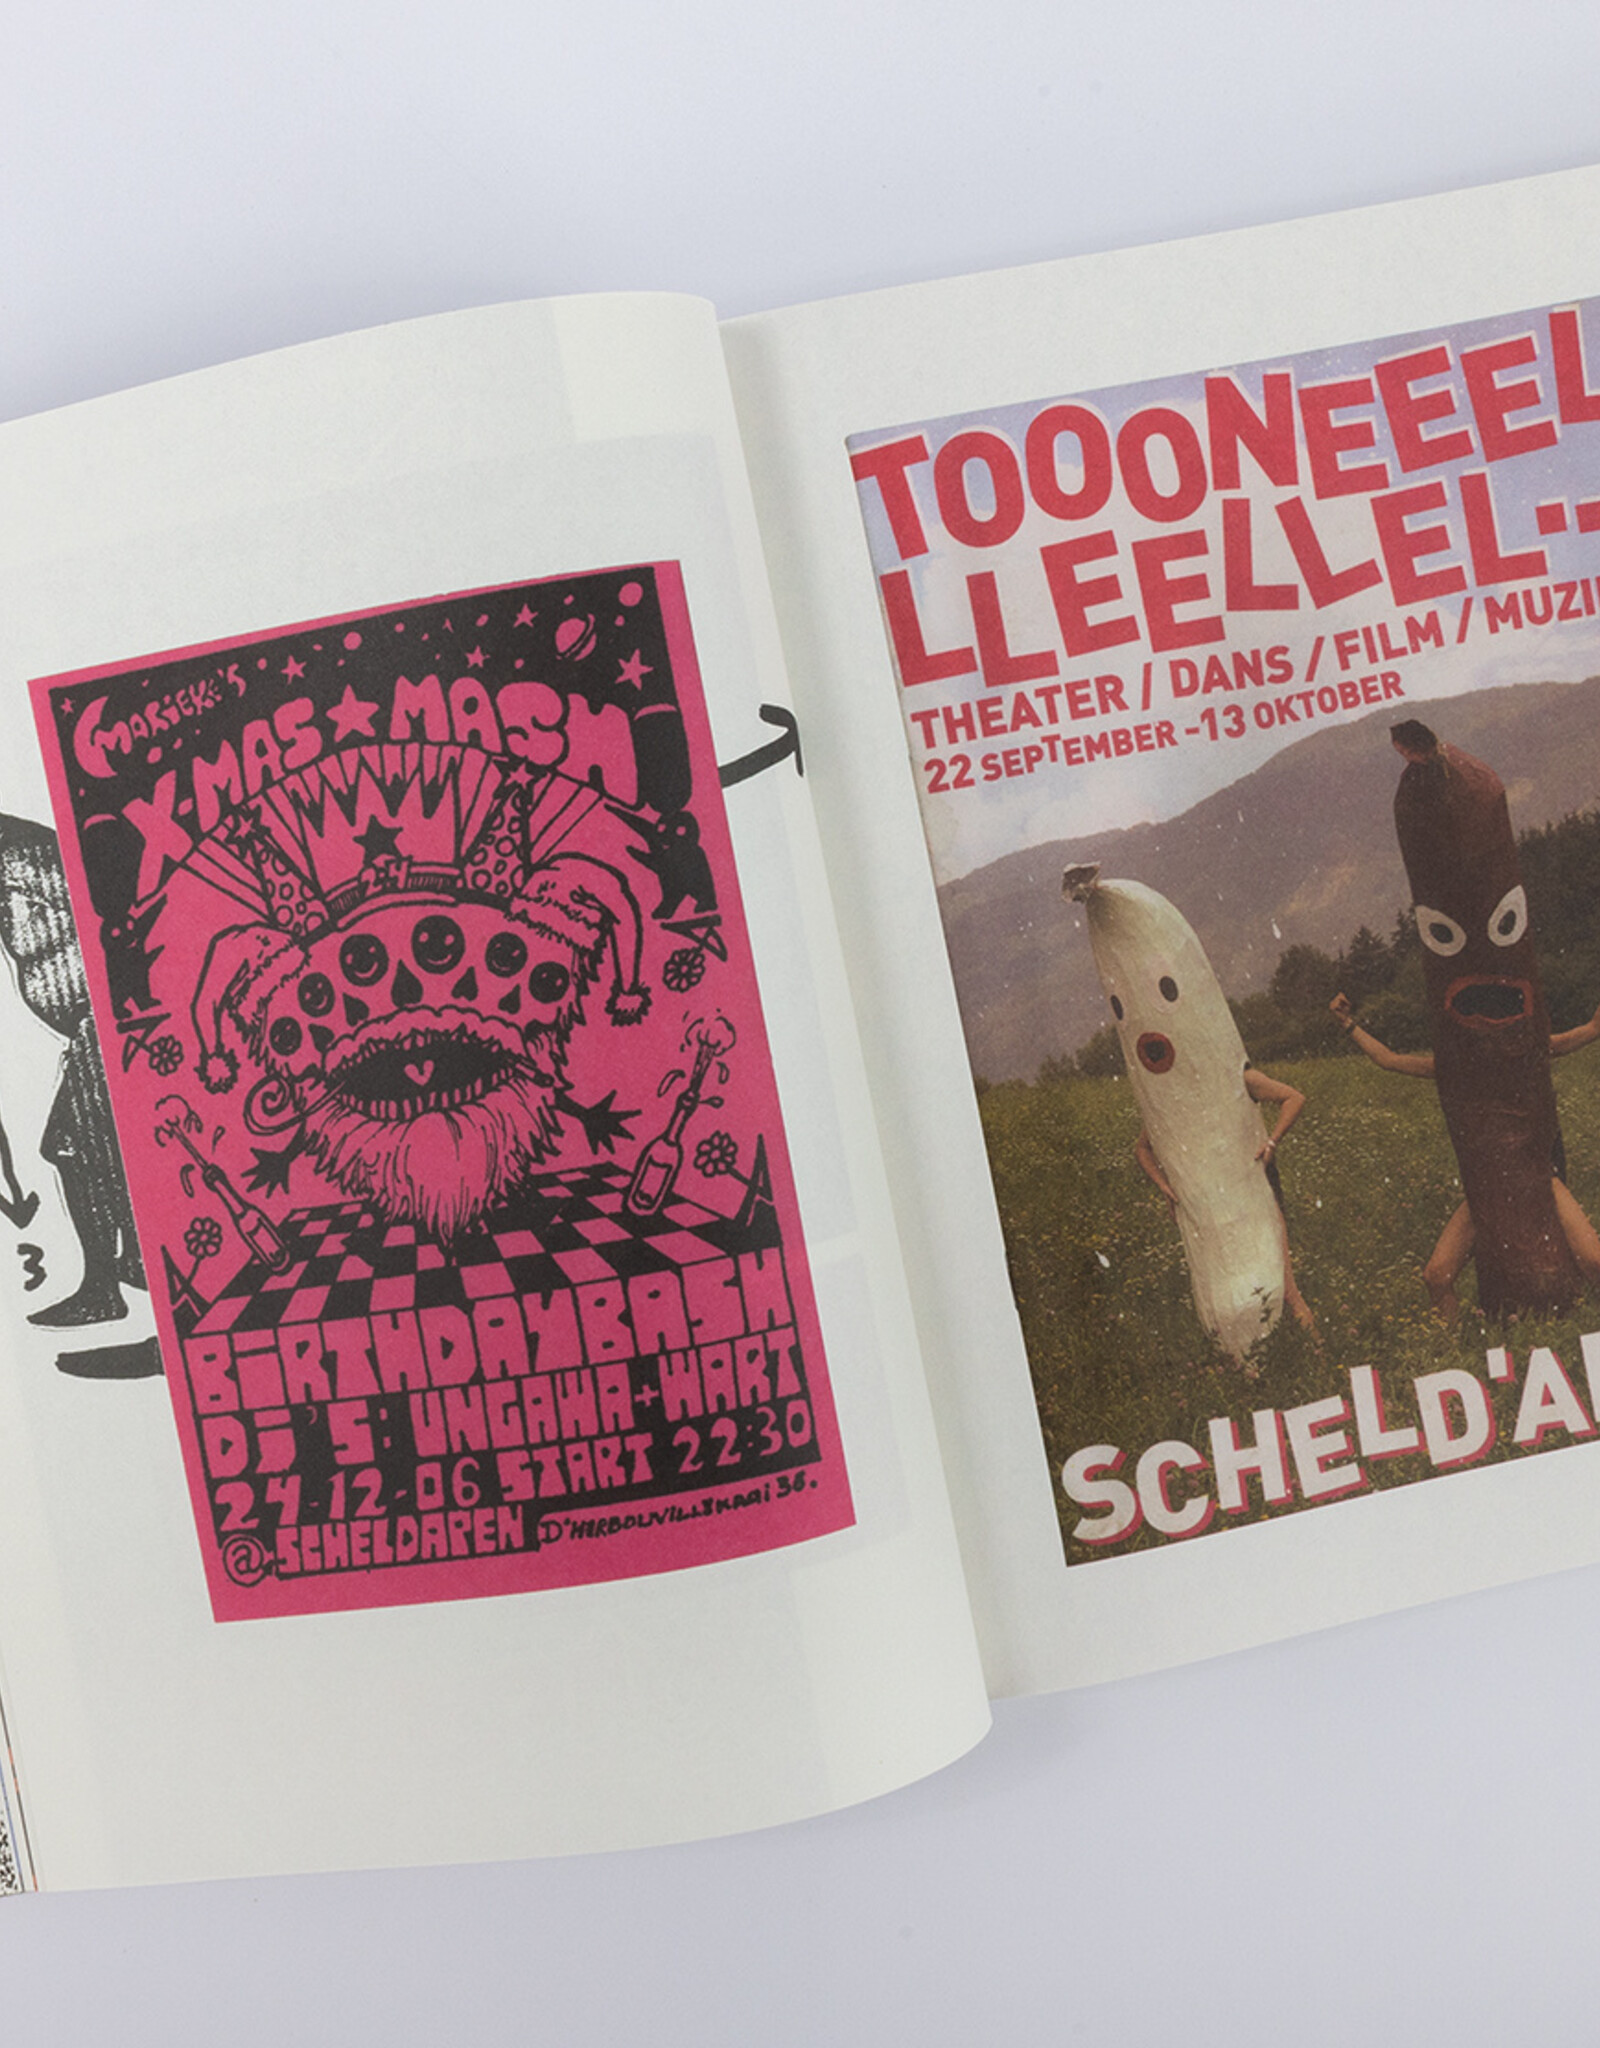 GRAPHIC DESIGN of Scheld’Apen by Benny Van den Meulengracht-Vrancx & Bent Vande Sompele